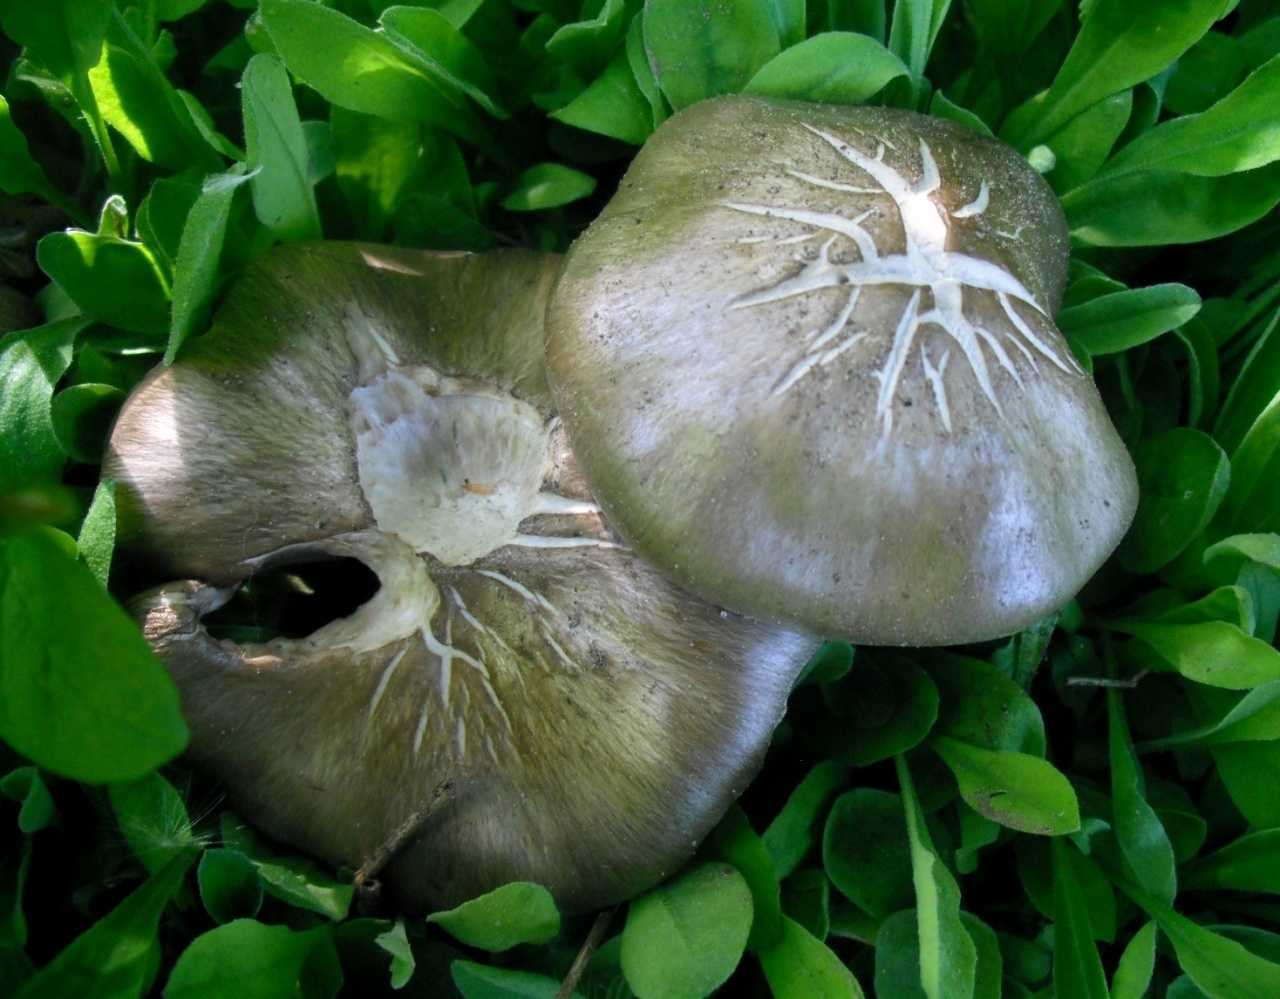 Как отличить съедобные грибы от несъедобных